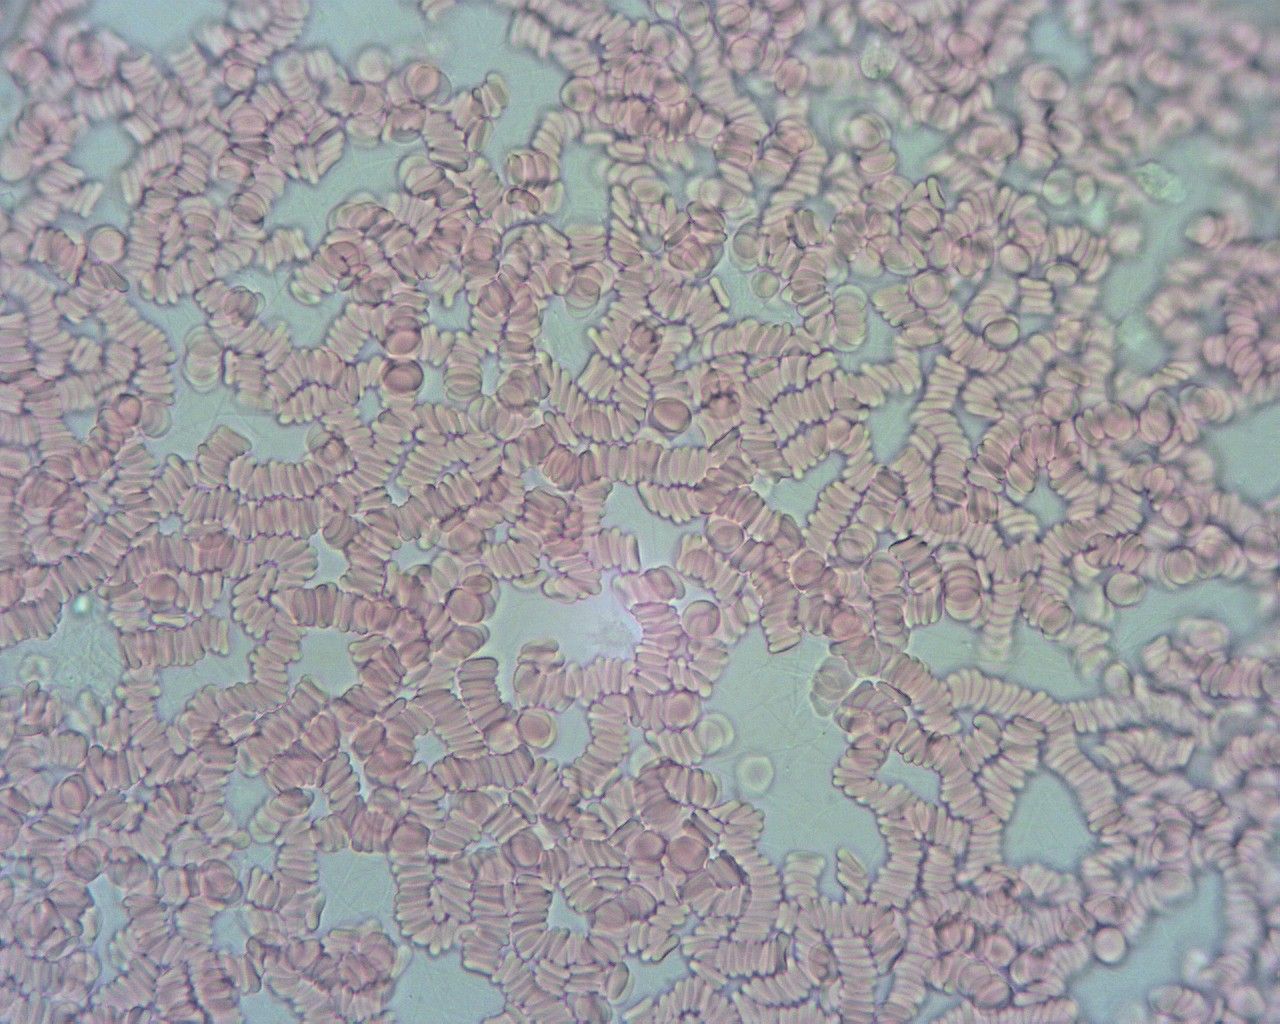 Obraz krwi spod mikroskopu. Krew jest bardzo gęsta i posklejana. 